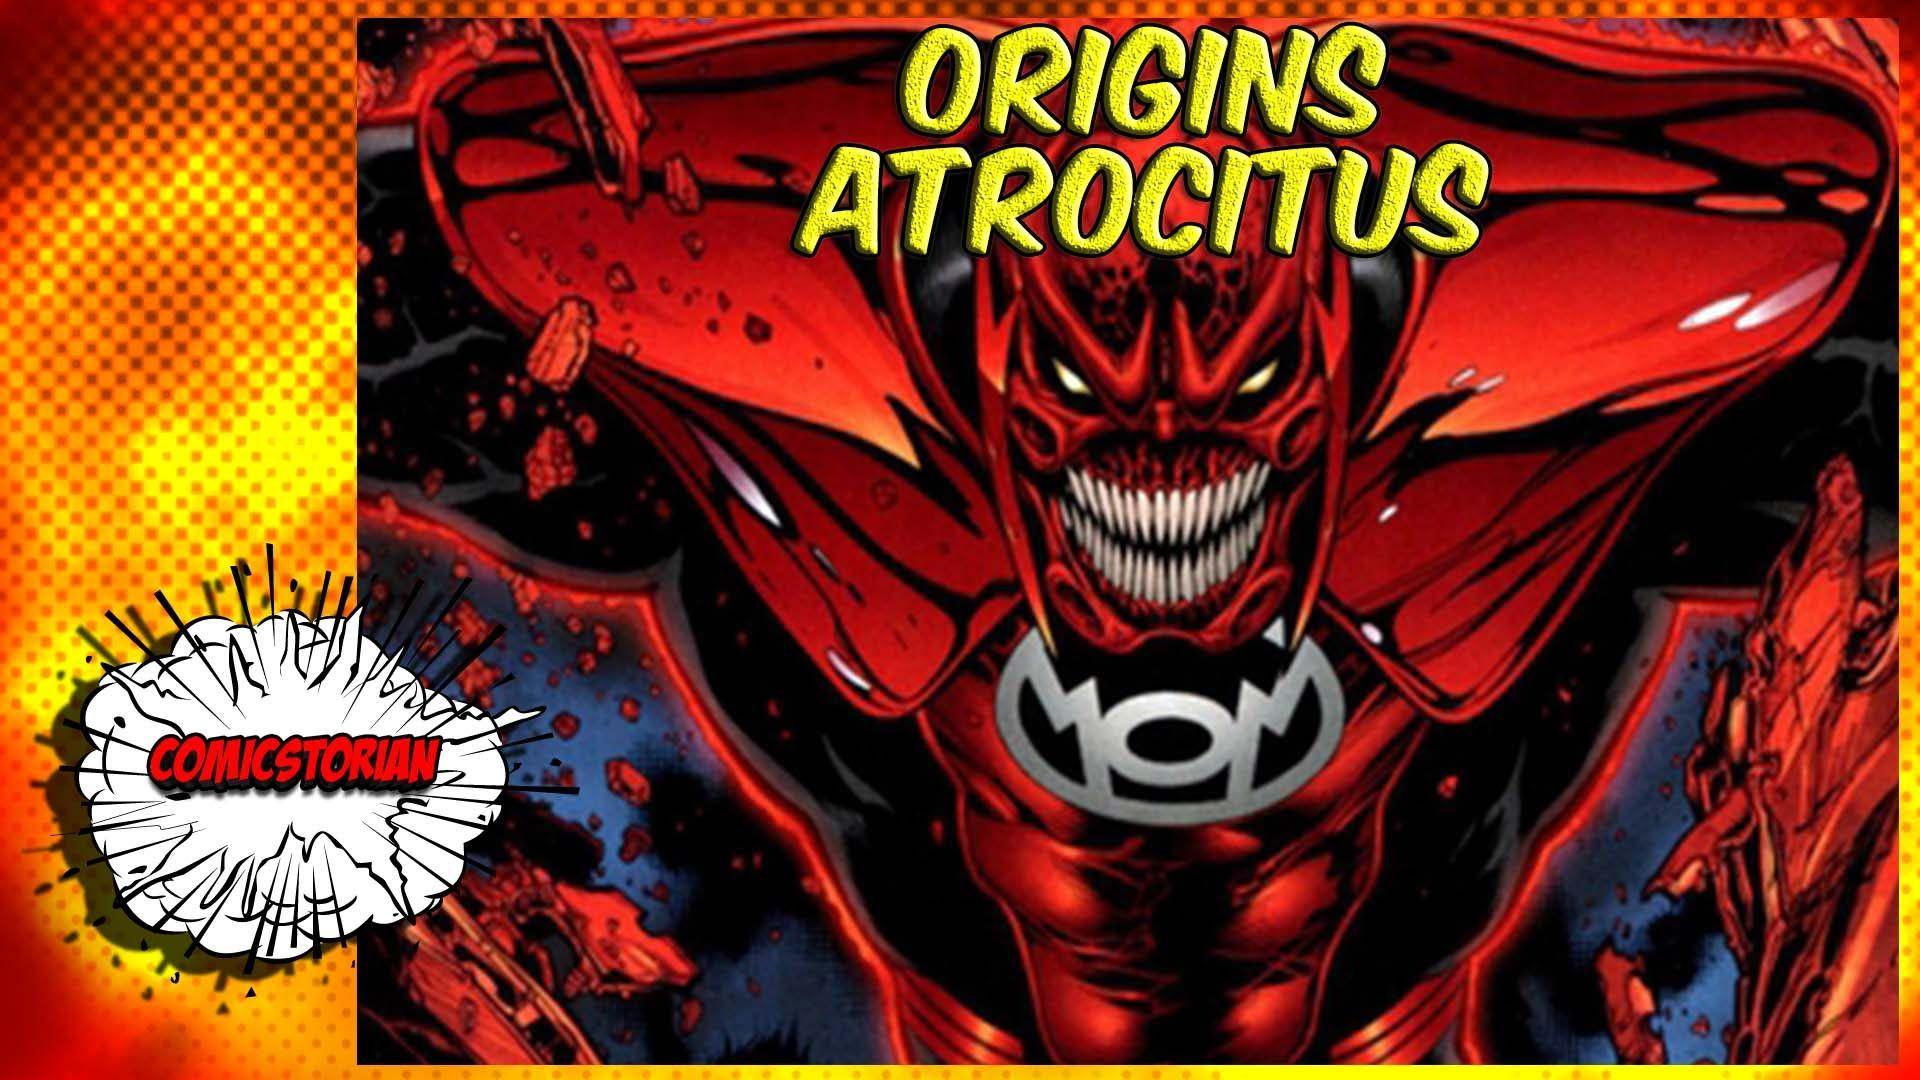 Atrocitus (Red Lantern) Origins